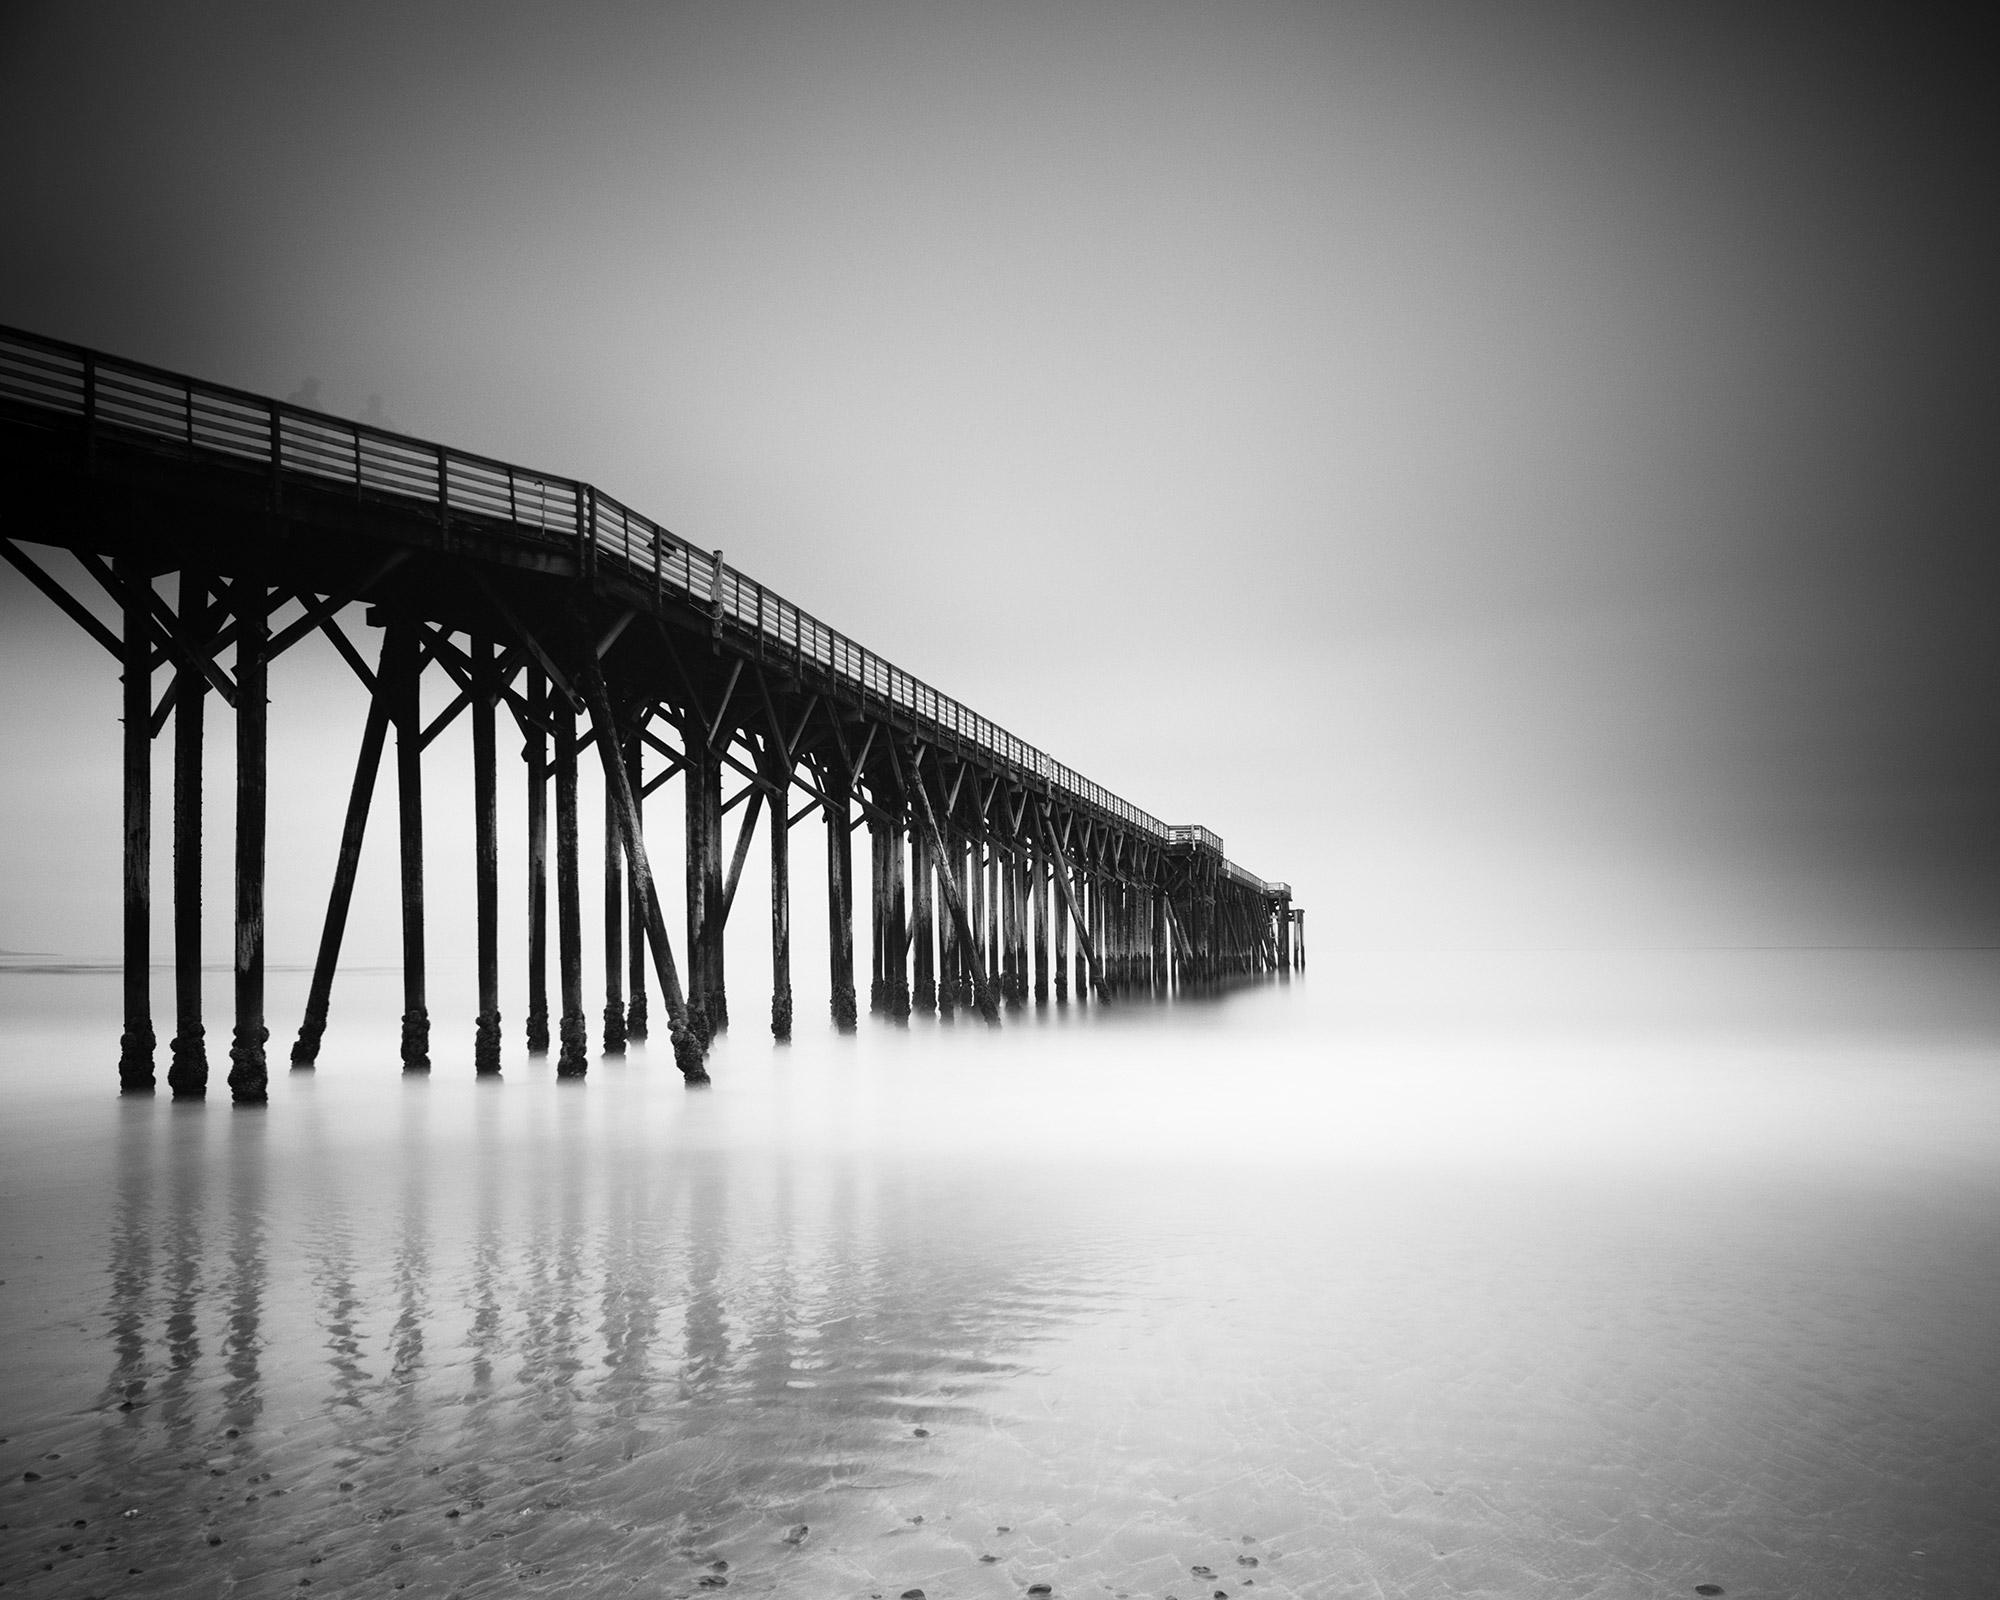 Schwarzer Pfeiler, Beach, Kalifornien, USA, Schwarz-Weiß-Fotografie mit langer Belichtungsdauer